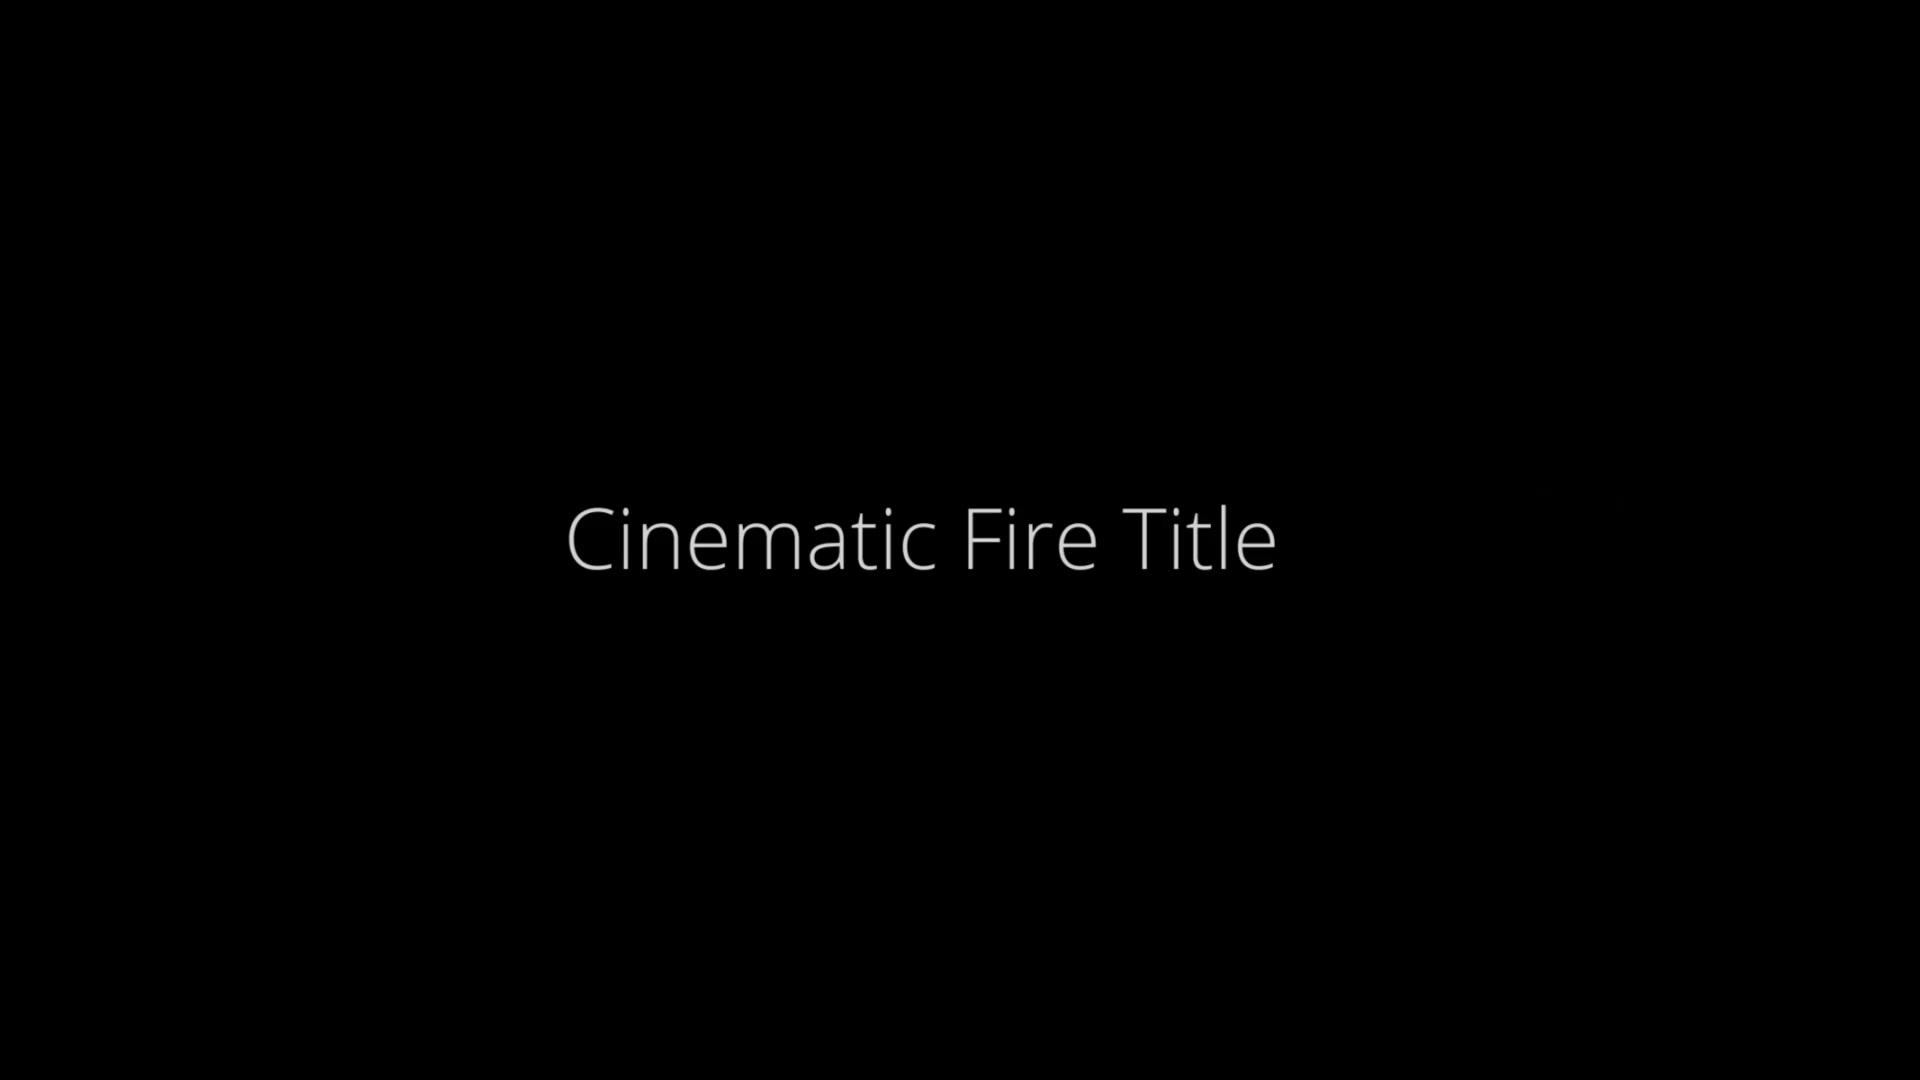 Cinematic Fire Title Videohive 25973506 Premiere Pro Image 5